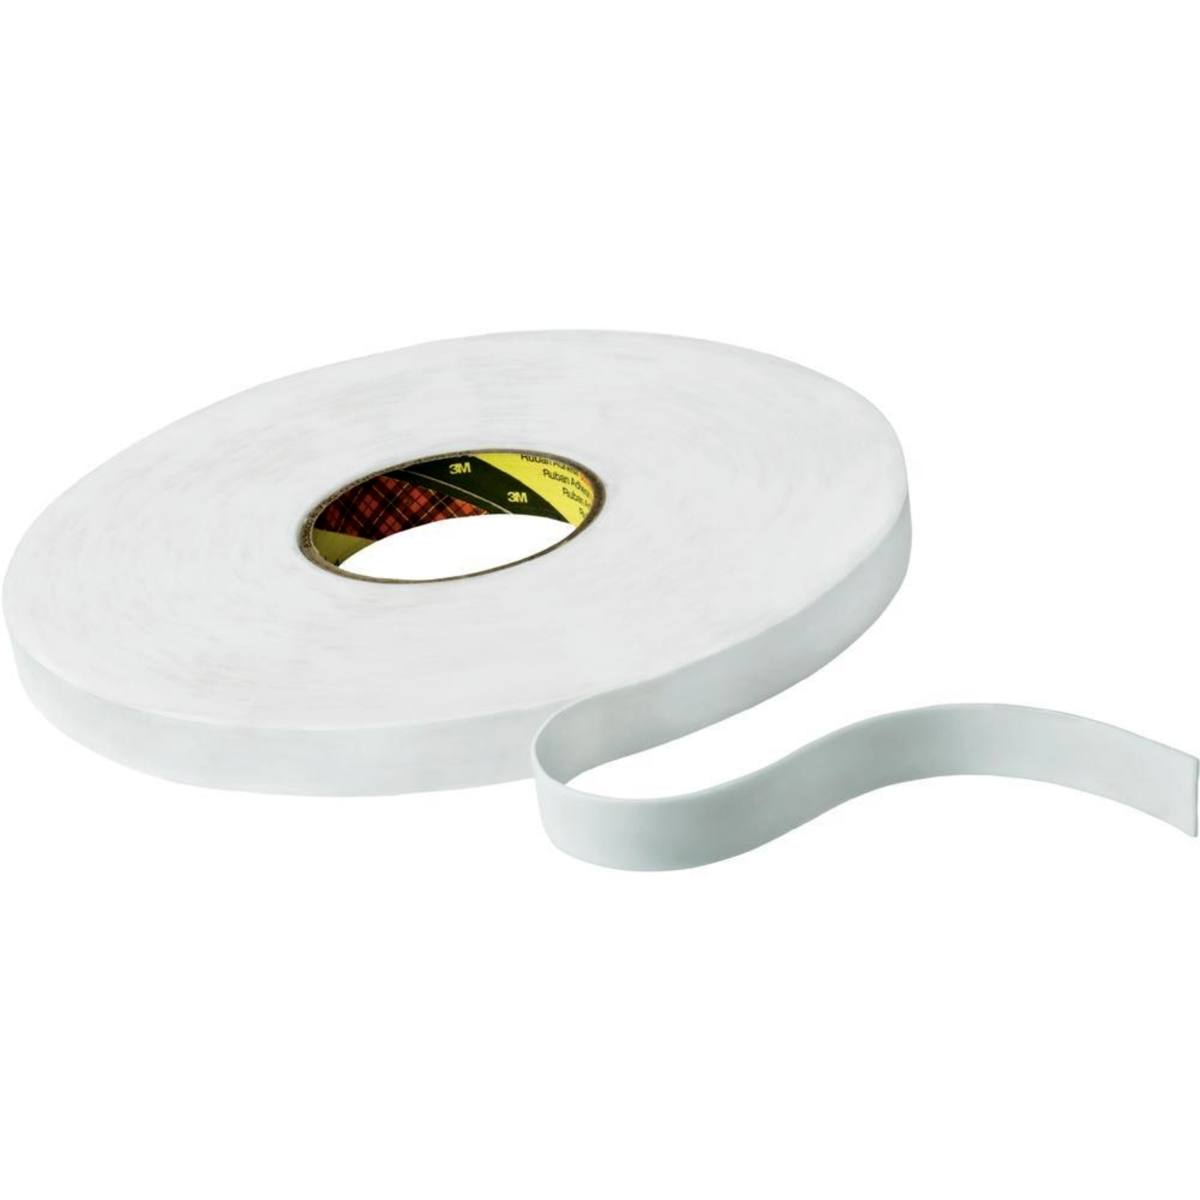 Nastro adesivo 3M in schiuma PE con adesivo in gomma-resina 9528, bianco, 6 mm x 66 m, 0,8 mm